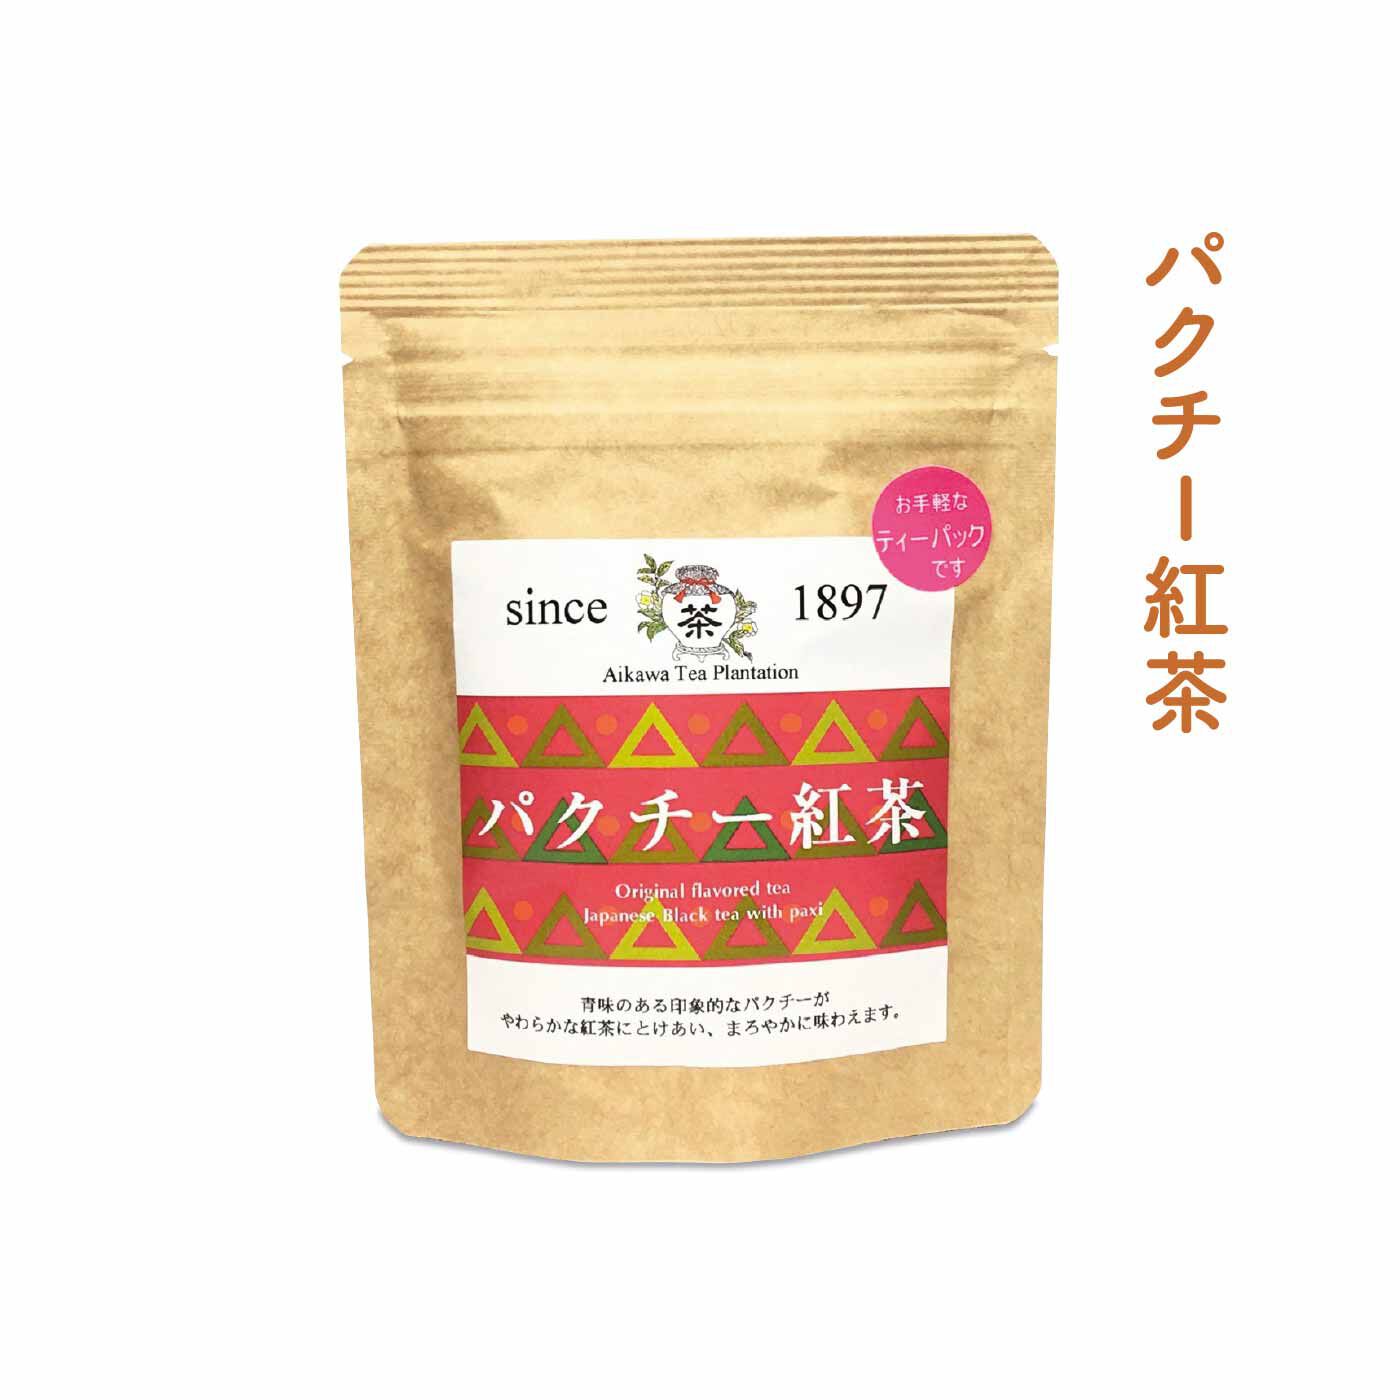 FELISSIMO PARTNERS|佐賀 相川製茶舗 いろんな味わいが楽しい うれしの茶の会（6回予約）|佐賀県産パクチーを使用したブレンドティー。